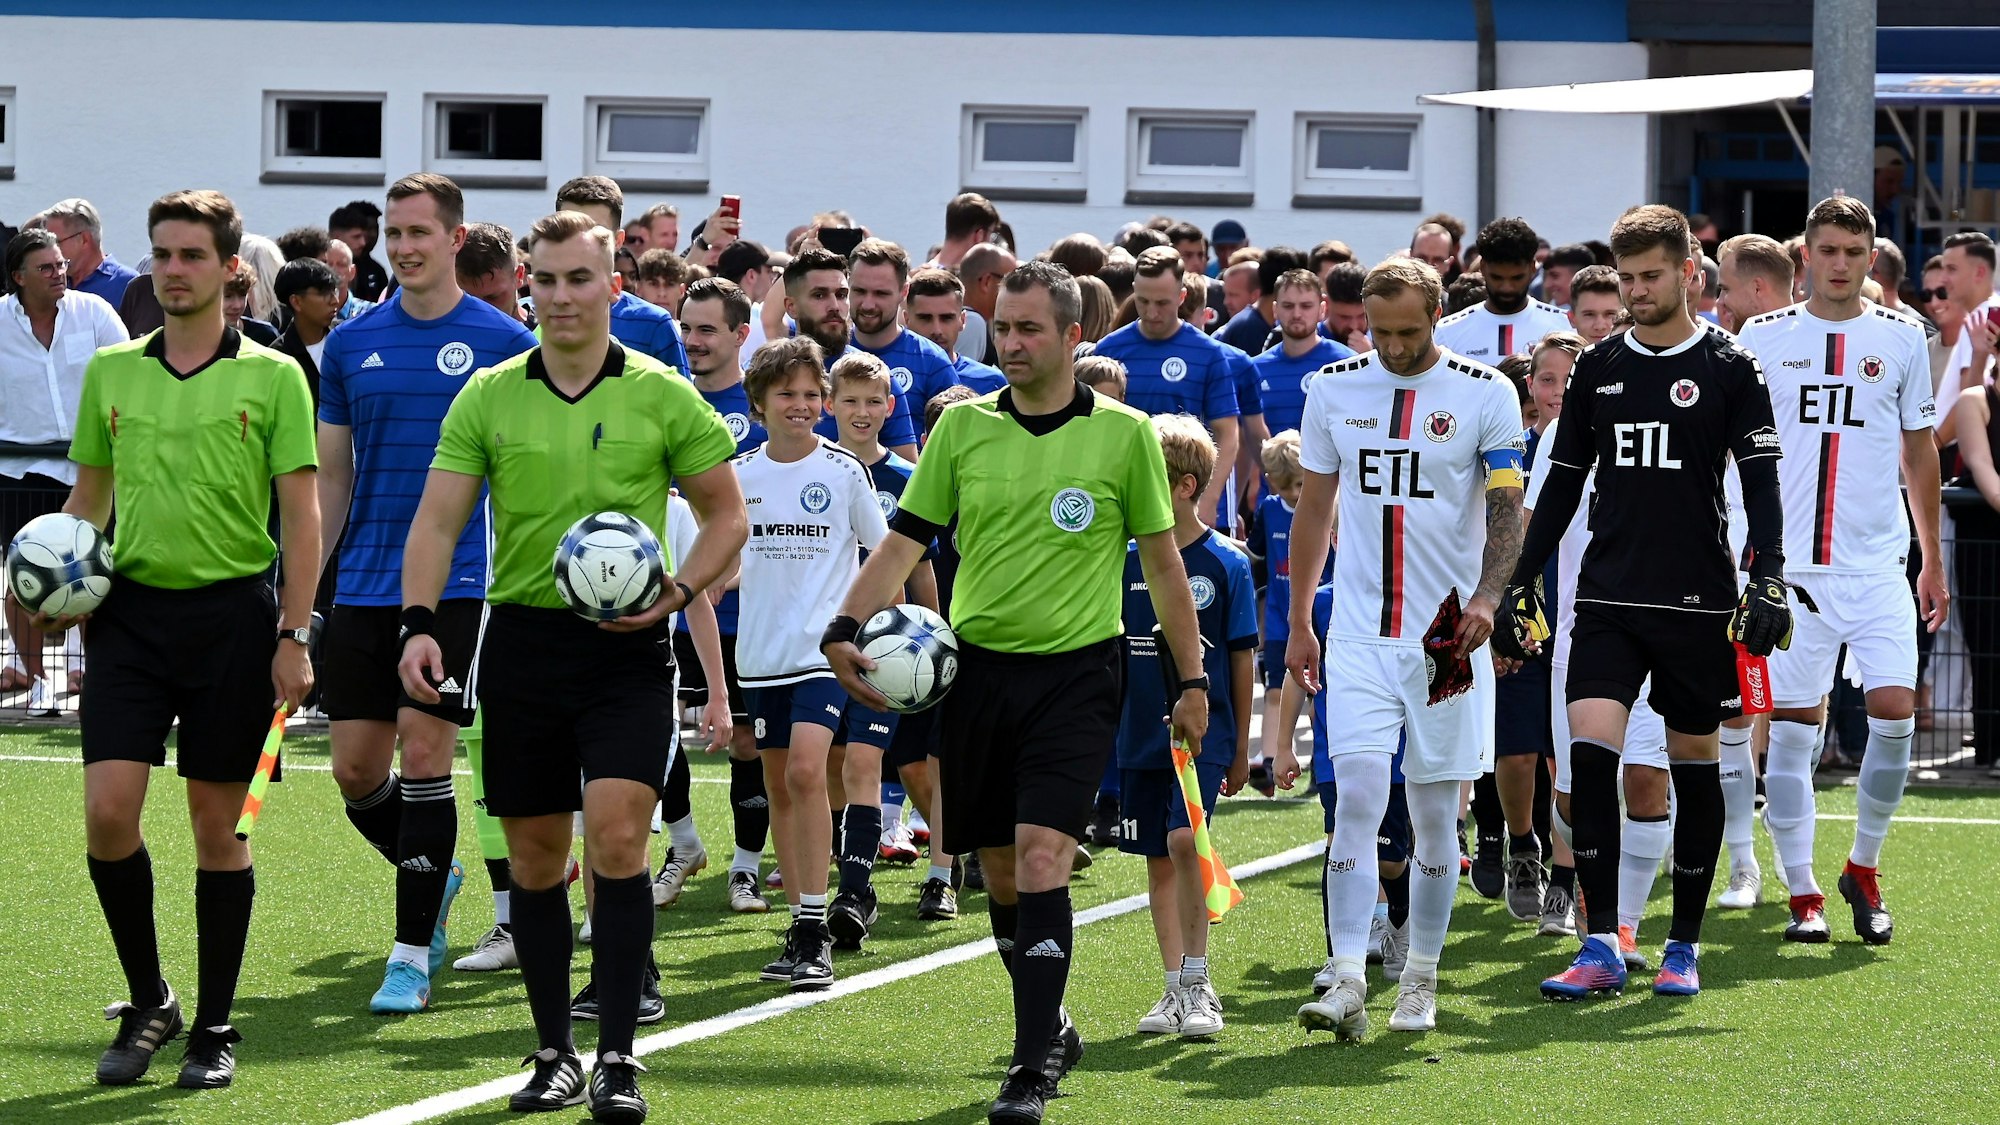 Zwei Fußball-Mannschaften in blauen und weißen Trikots laufen gemeinsam mit den Schiedsrichtern auf das Feld.